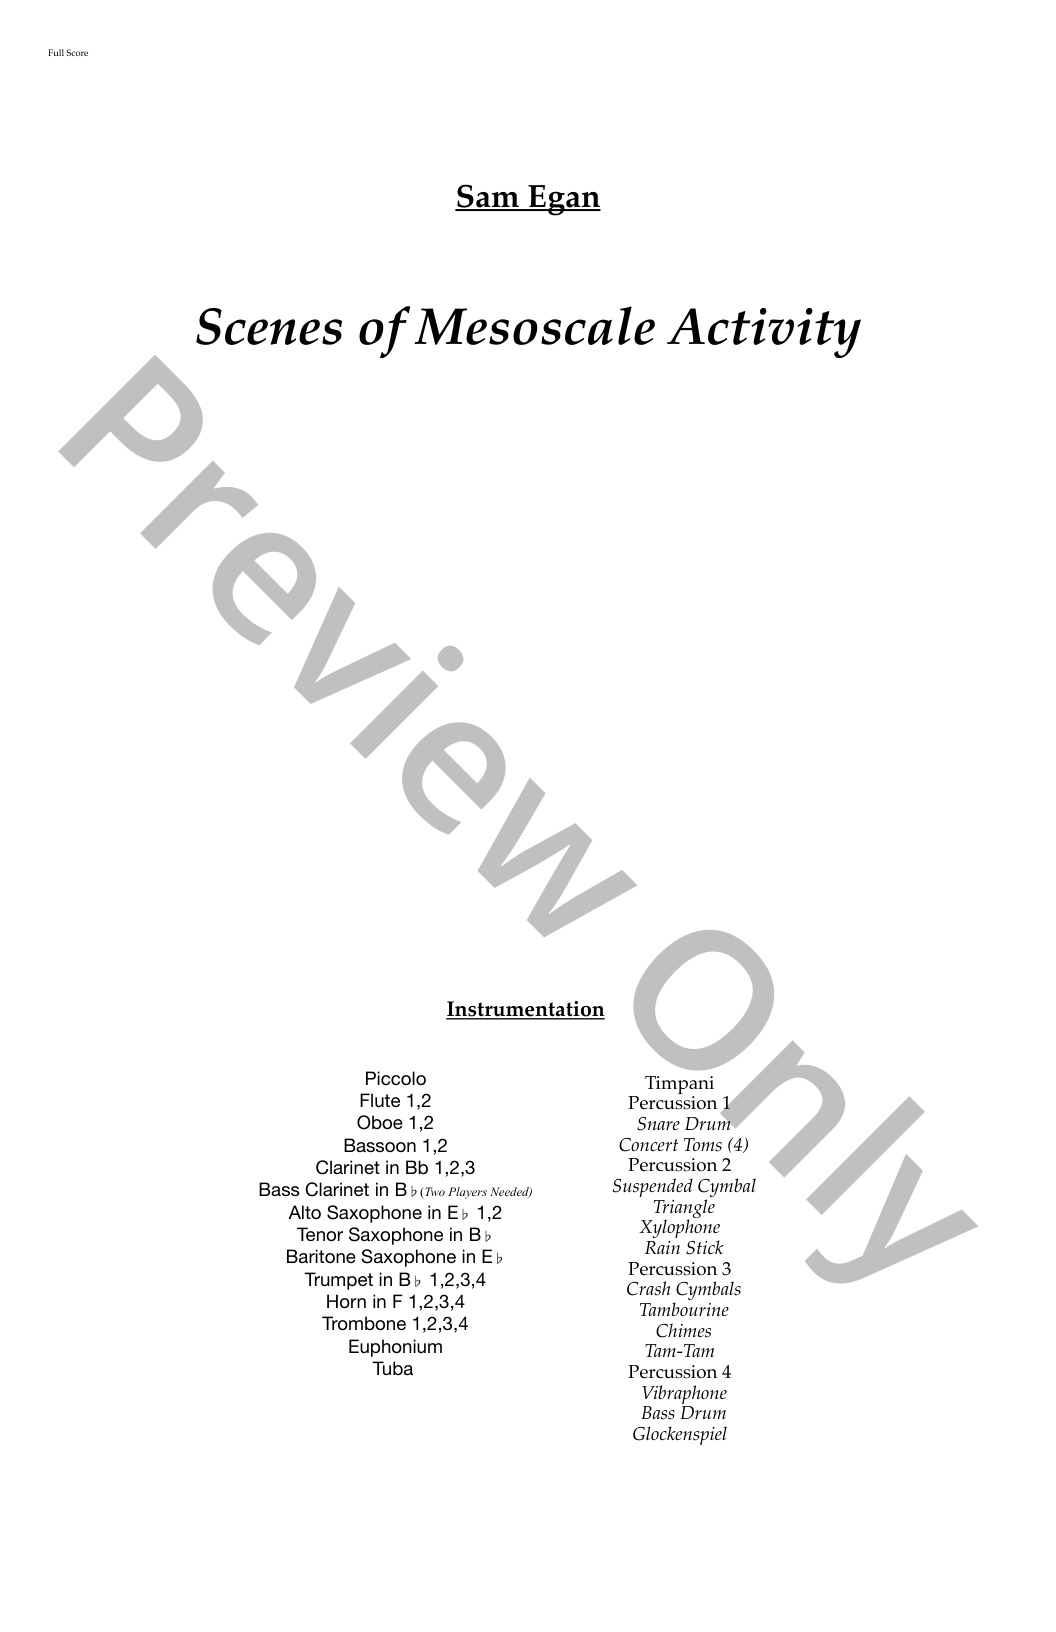 Scenes of Mesoscale Activities P.O.D